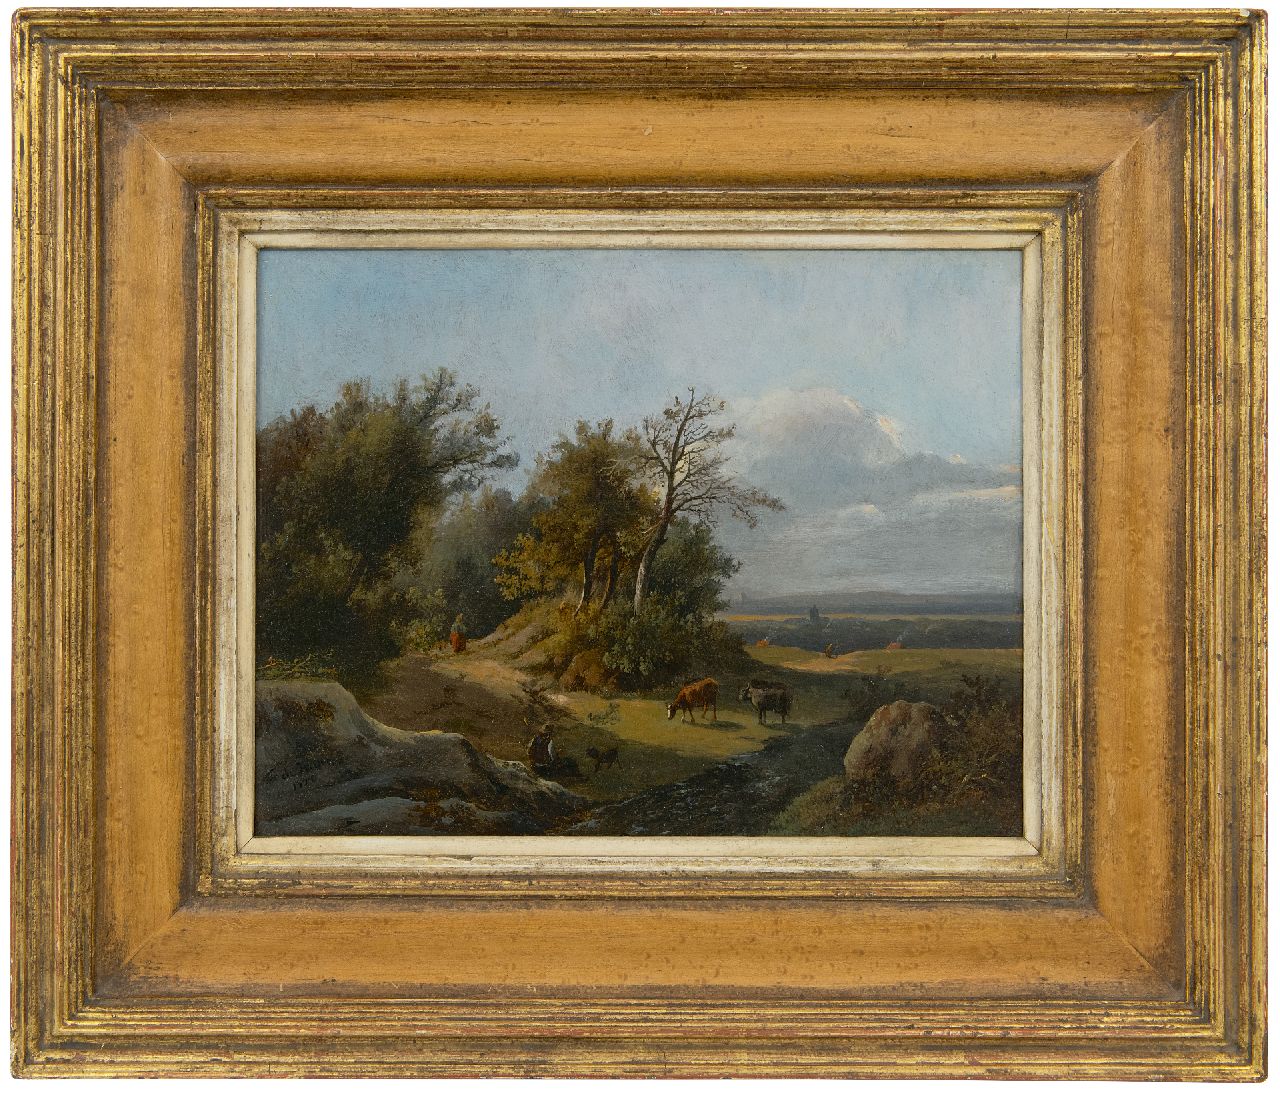 Haan F.A. de | Franciscus Antonius de Haan | Schilderijen te koop aangeboden | Herder met vee in zonnig heuvellandschap, olieverf op paneel 21,2 x 26,9 cm, gesigneerd linksonder en gedateerd 1850